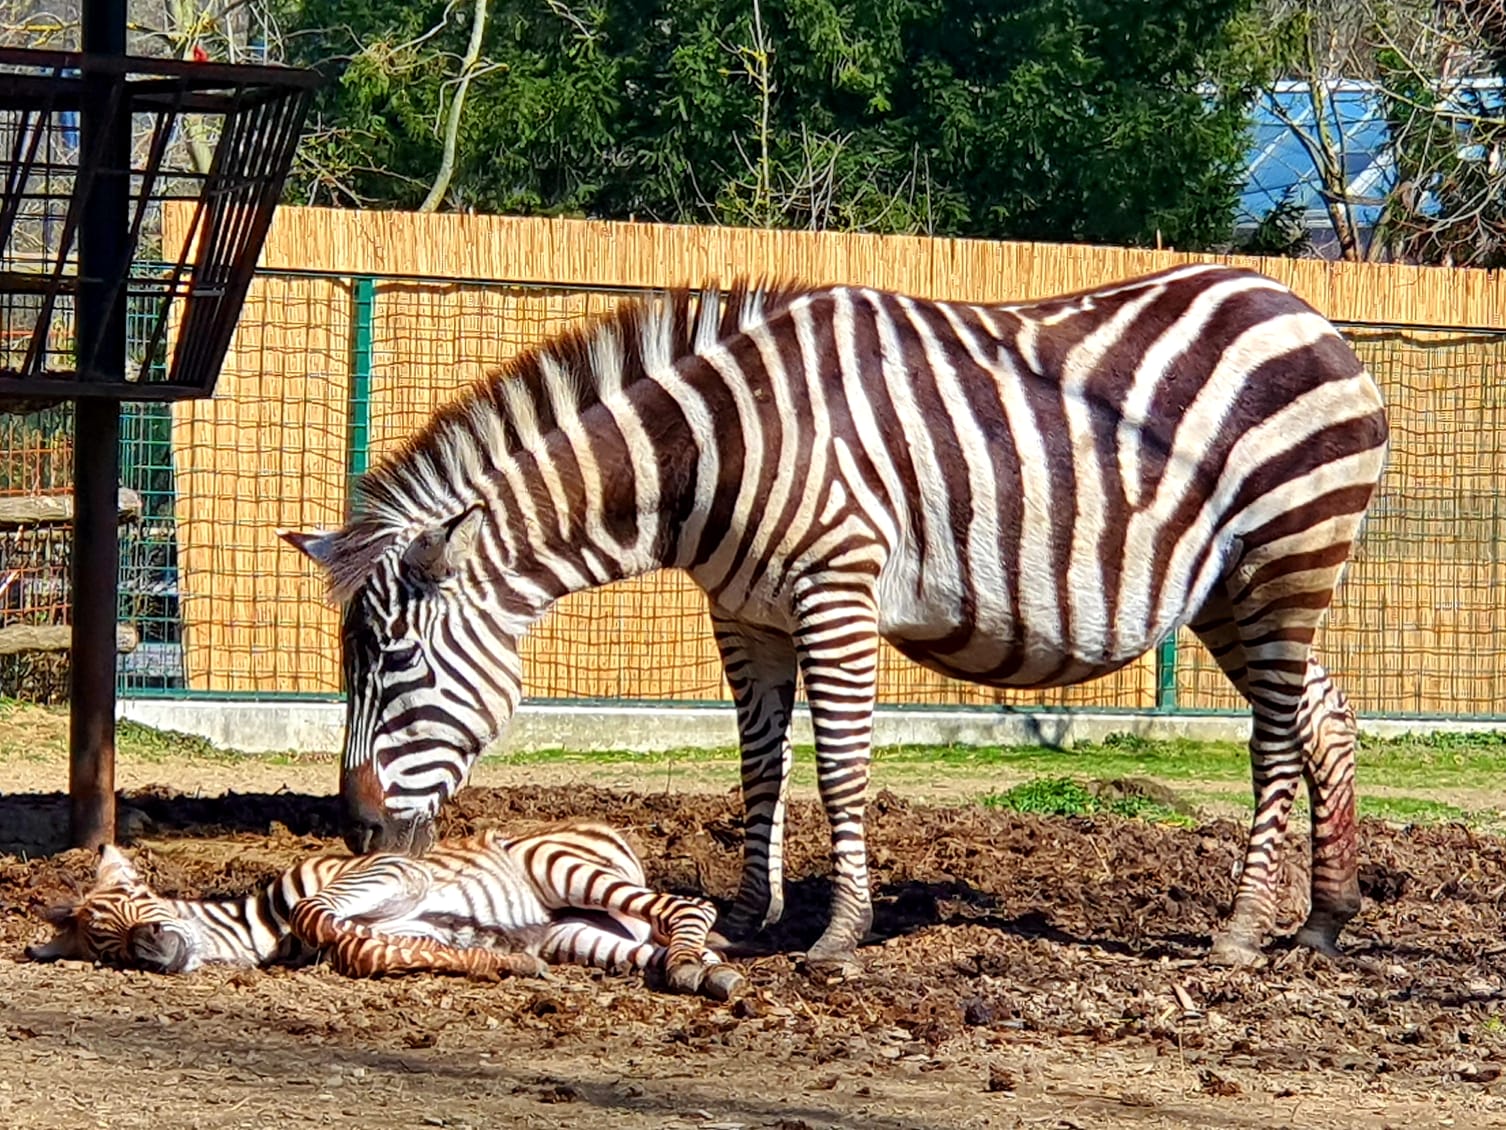 Mladunče u pravilu ima tridesetak kilograma, a odrasla zebra može biti deset puta teža.
